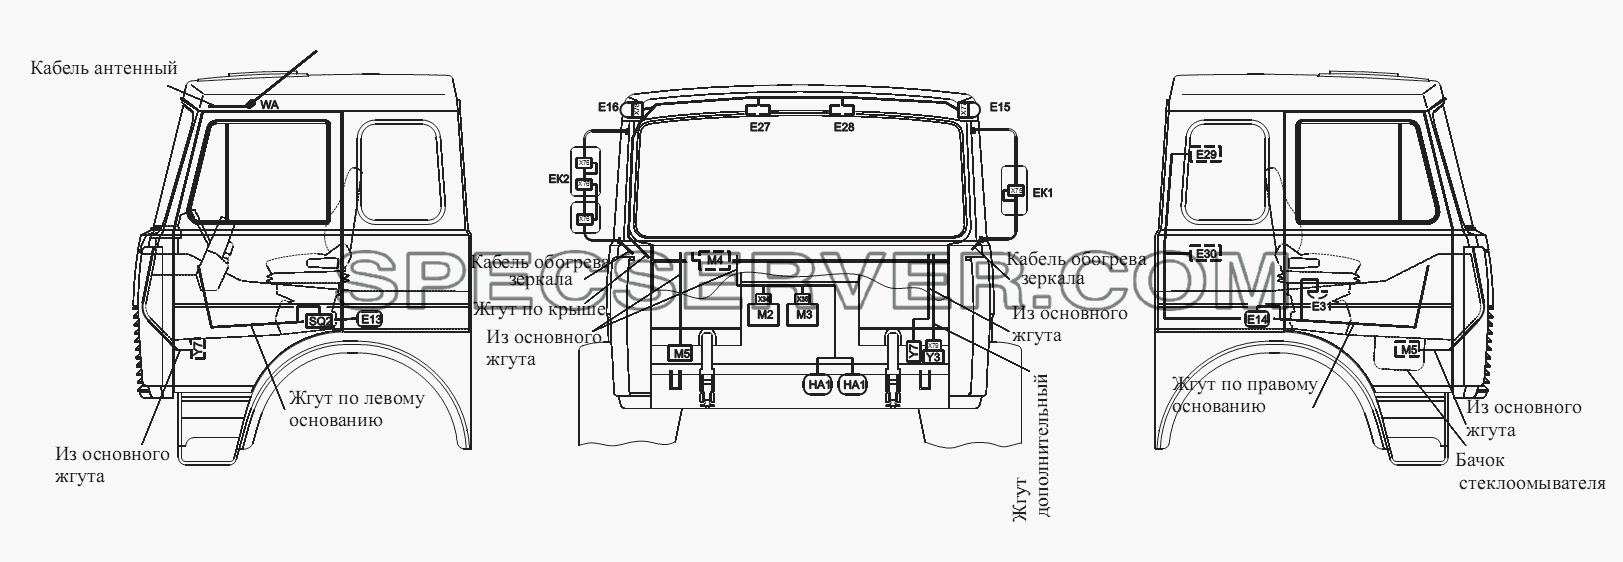 Расположение разъемов и элементов электрооборудования на большой кабине автомобилей-самосвалов с задней разгрузкой и самосвальных шасси для МАЗ-555102, 5551А2 (список запасных частей)